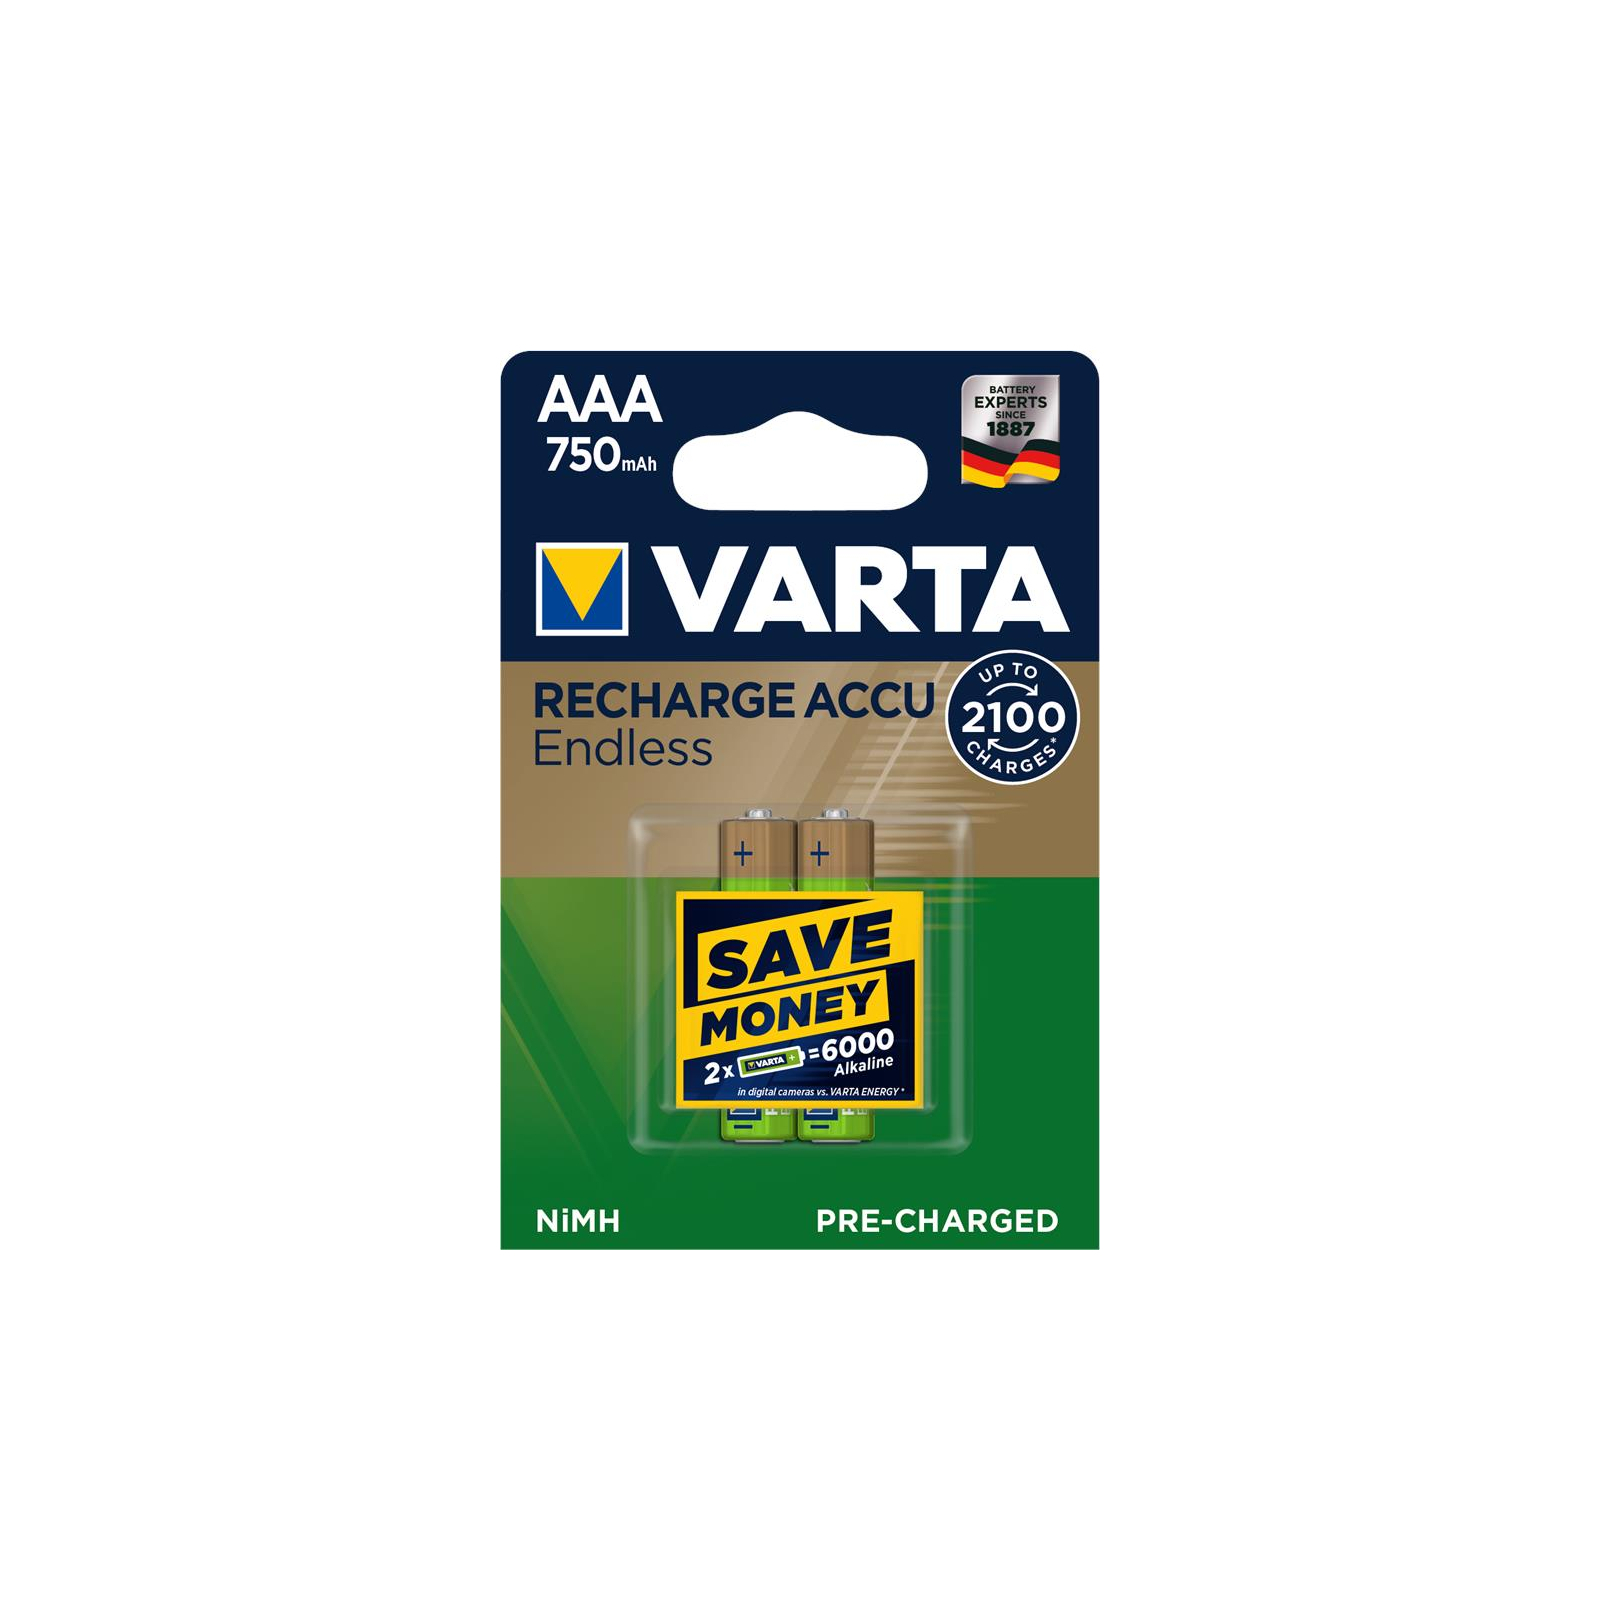 Аккумулятор Varta AAA Rechargeable Accu 750mAh * 2 (56673101402)